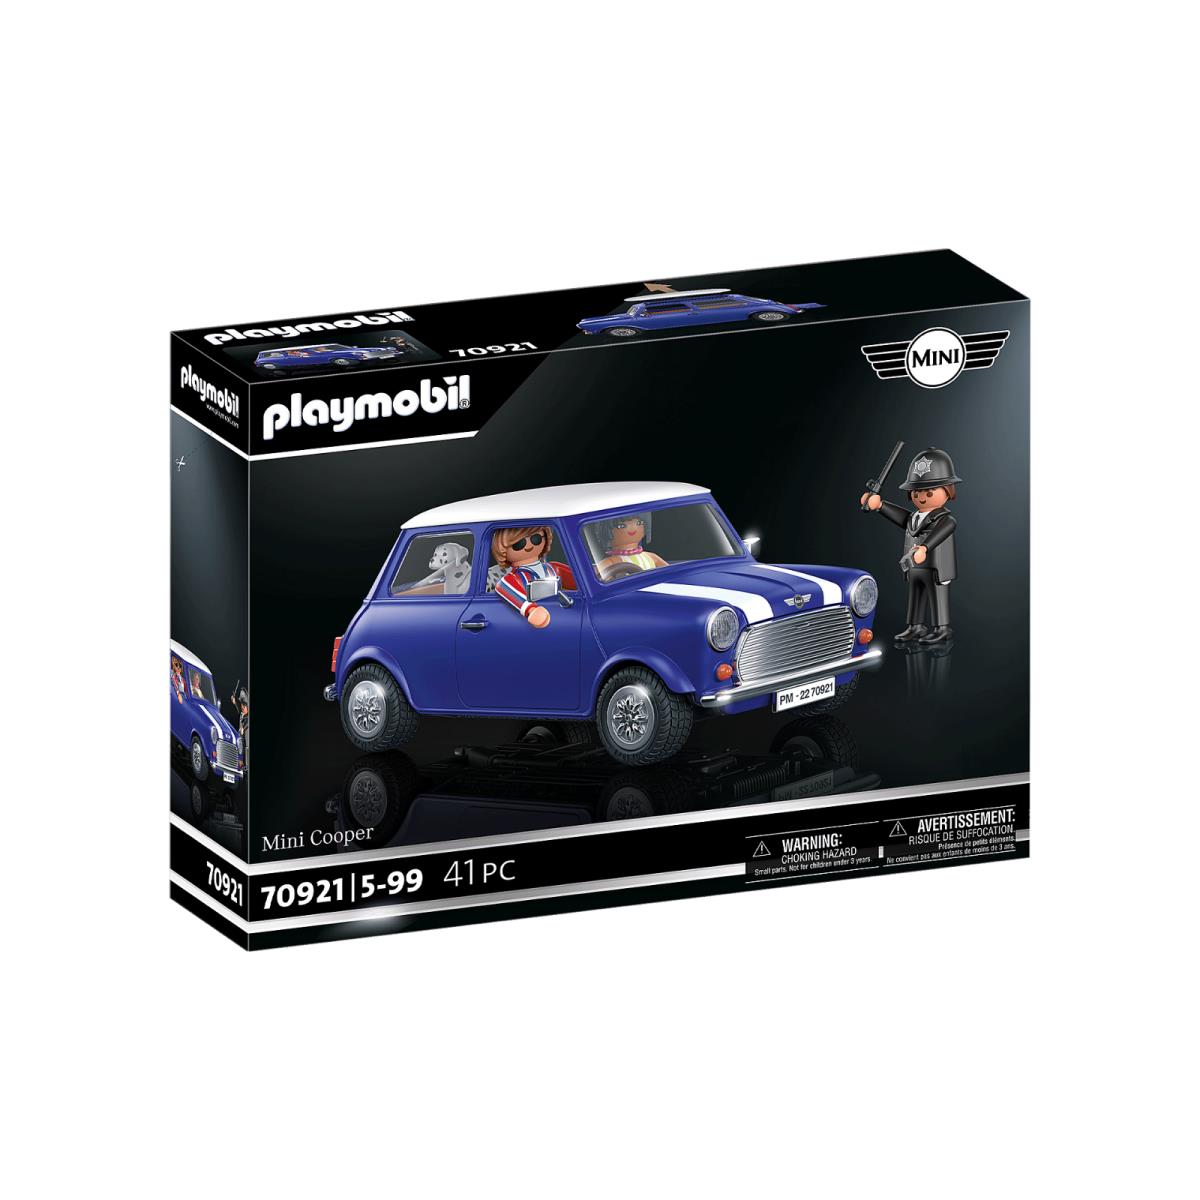 Playmobil 70921 Mini Cooper Mib/new